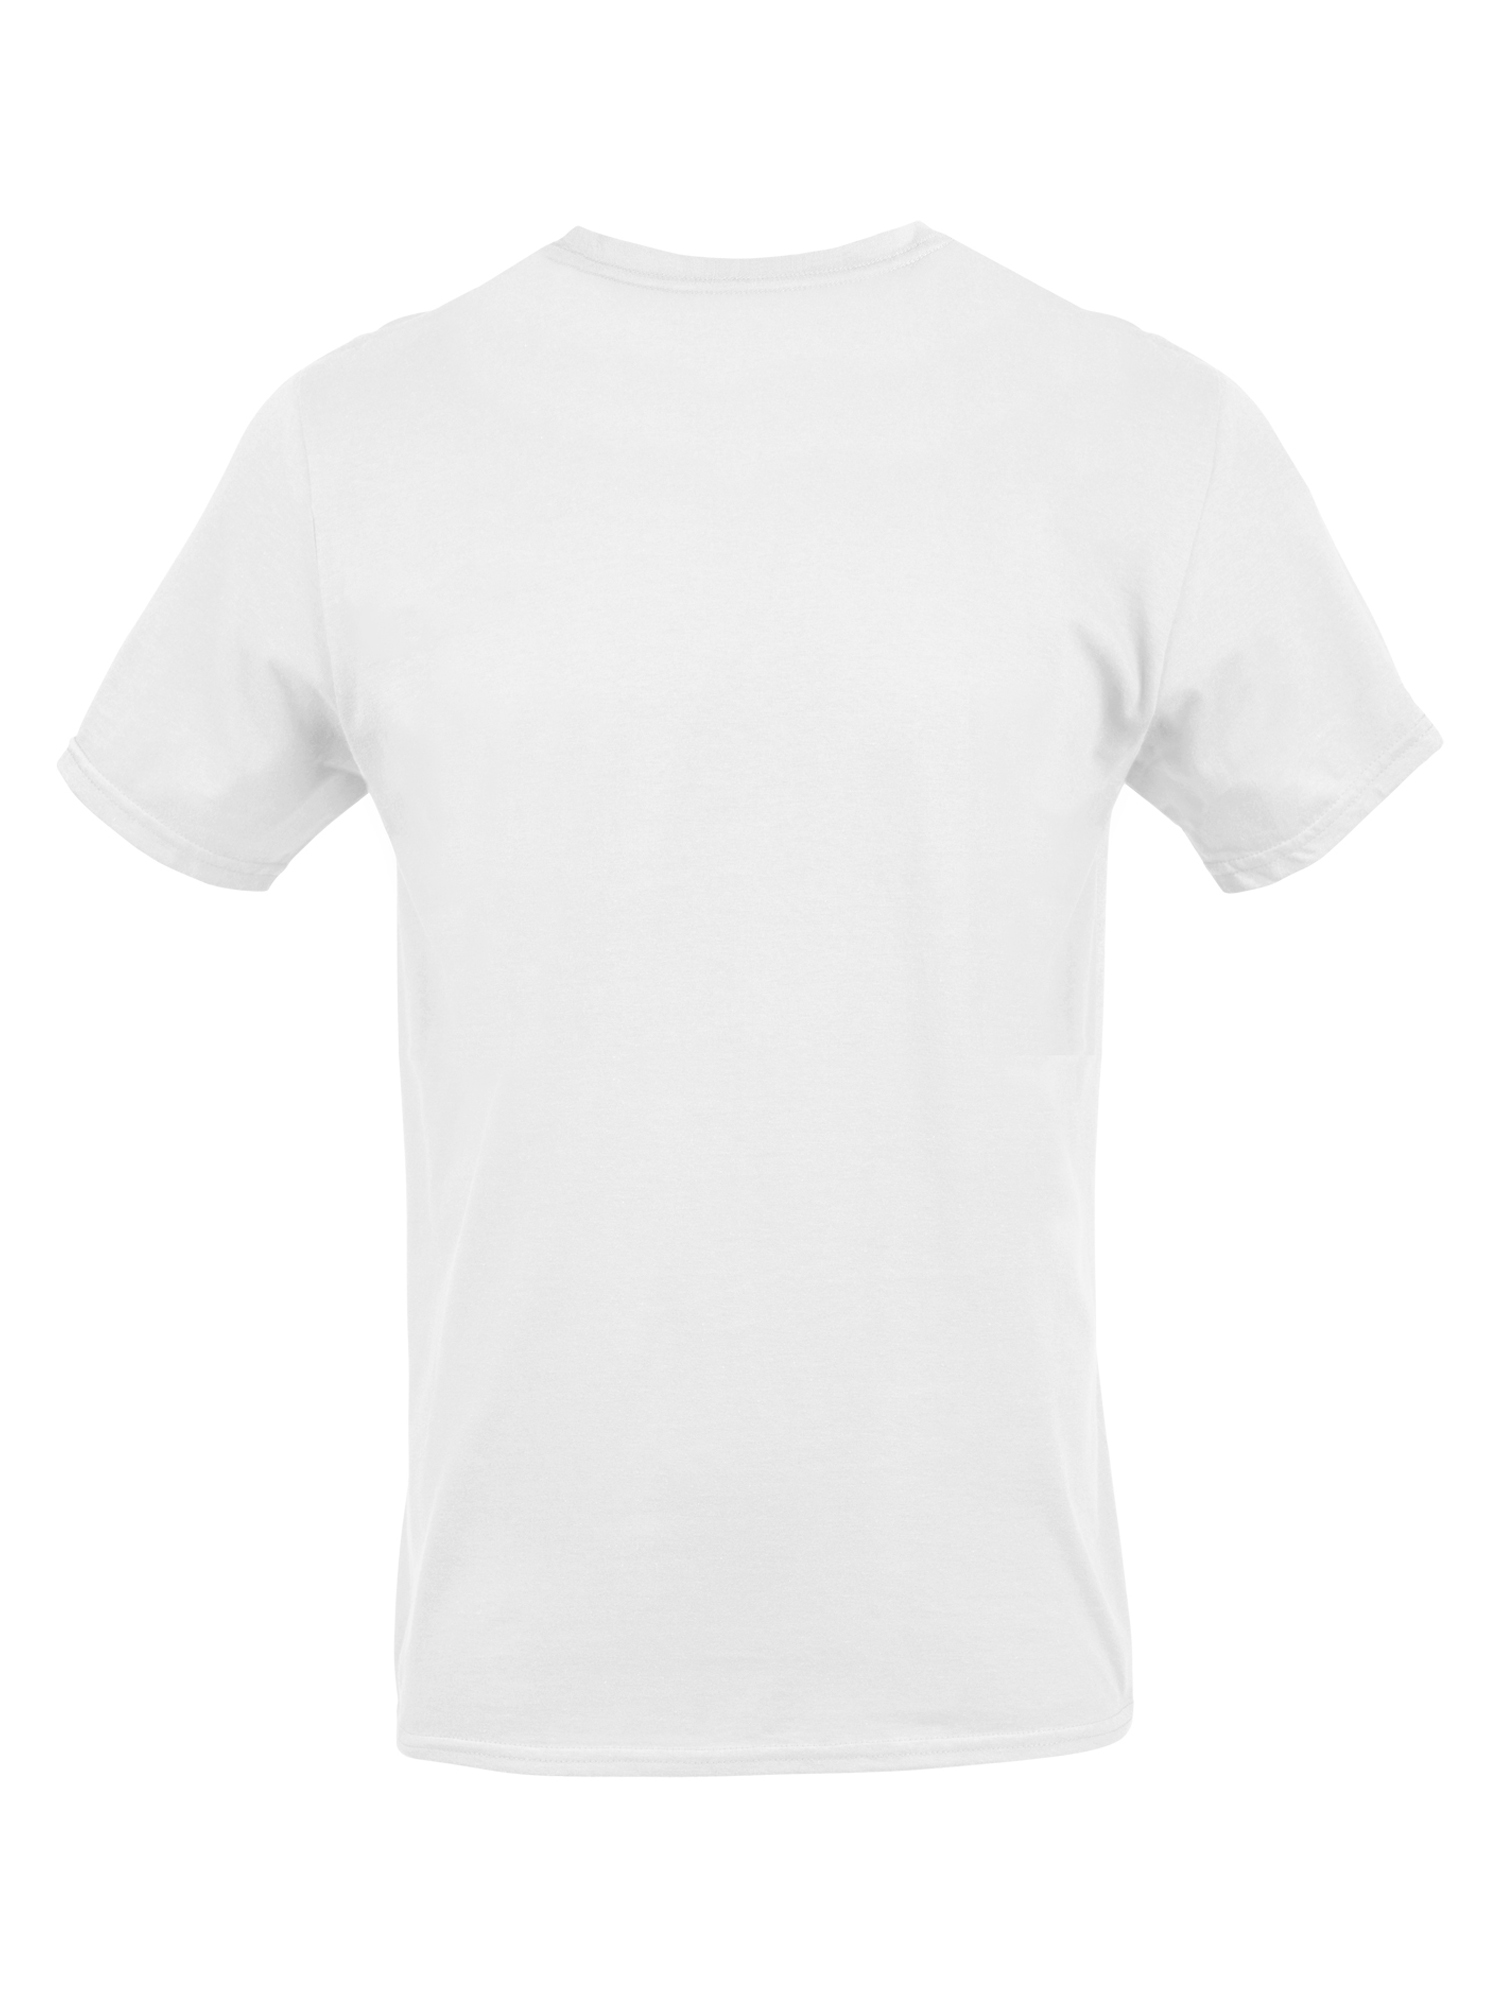 Gildan Men's Crew T-Shirts, 3-Pack - image 4 of 5